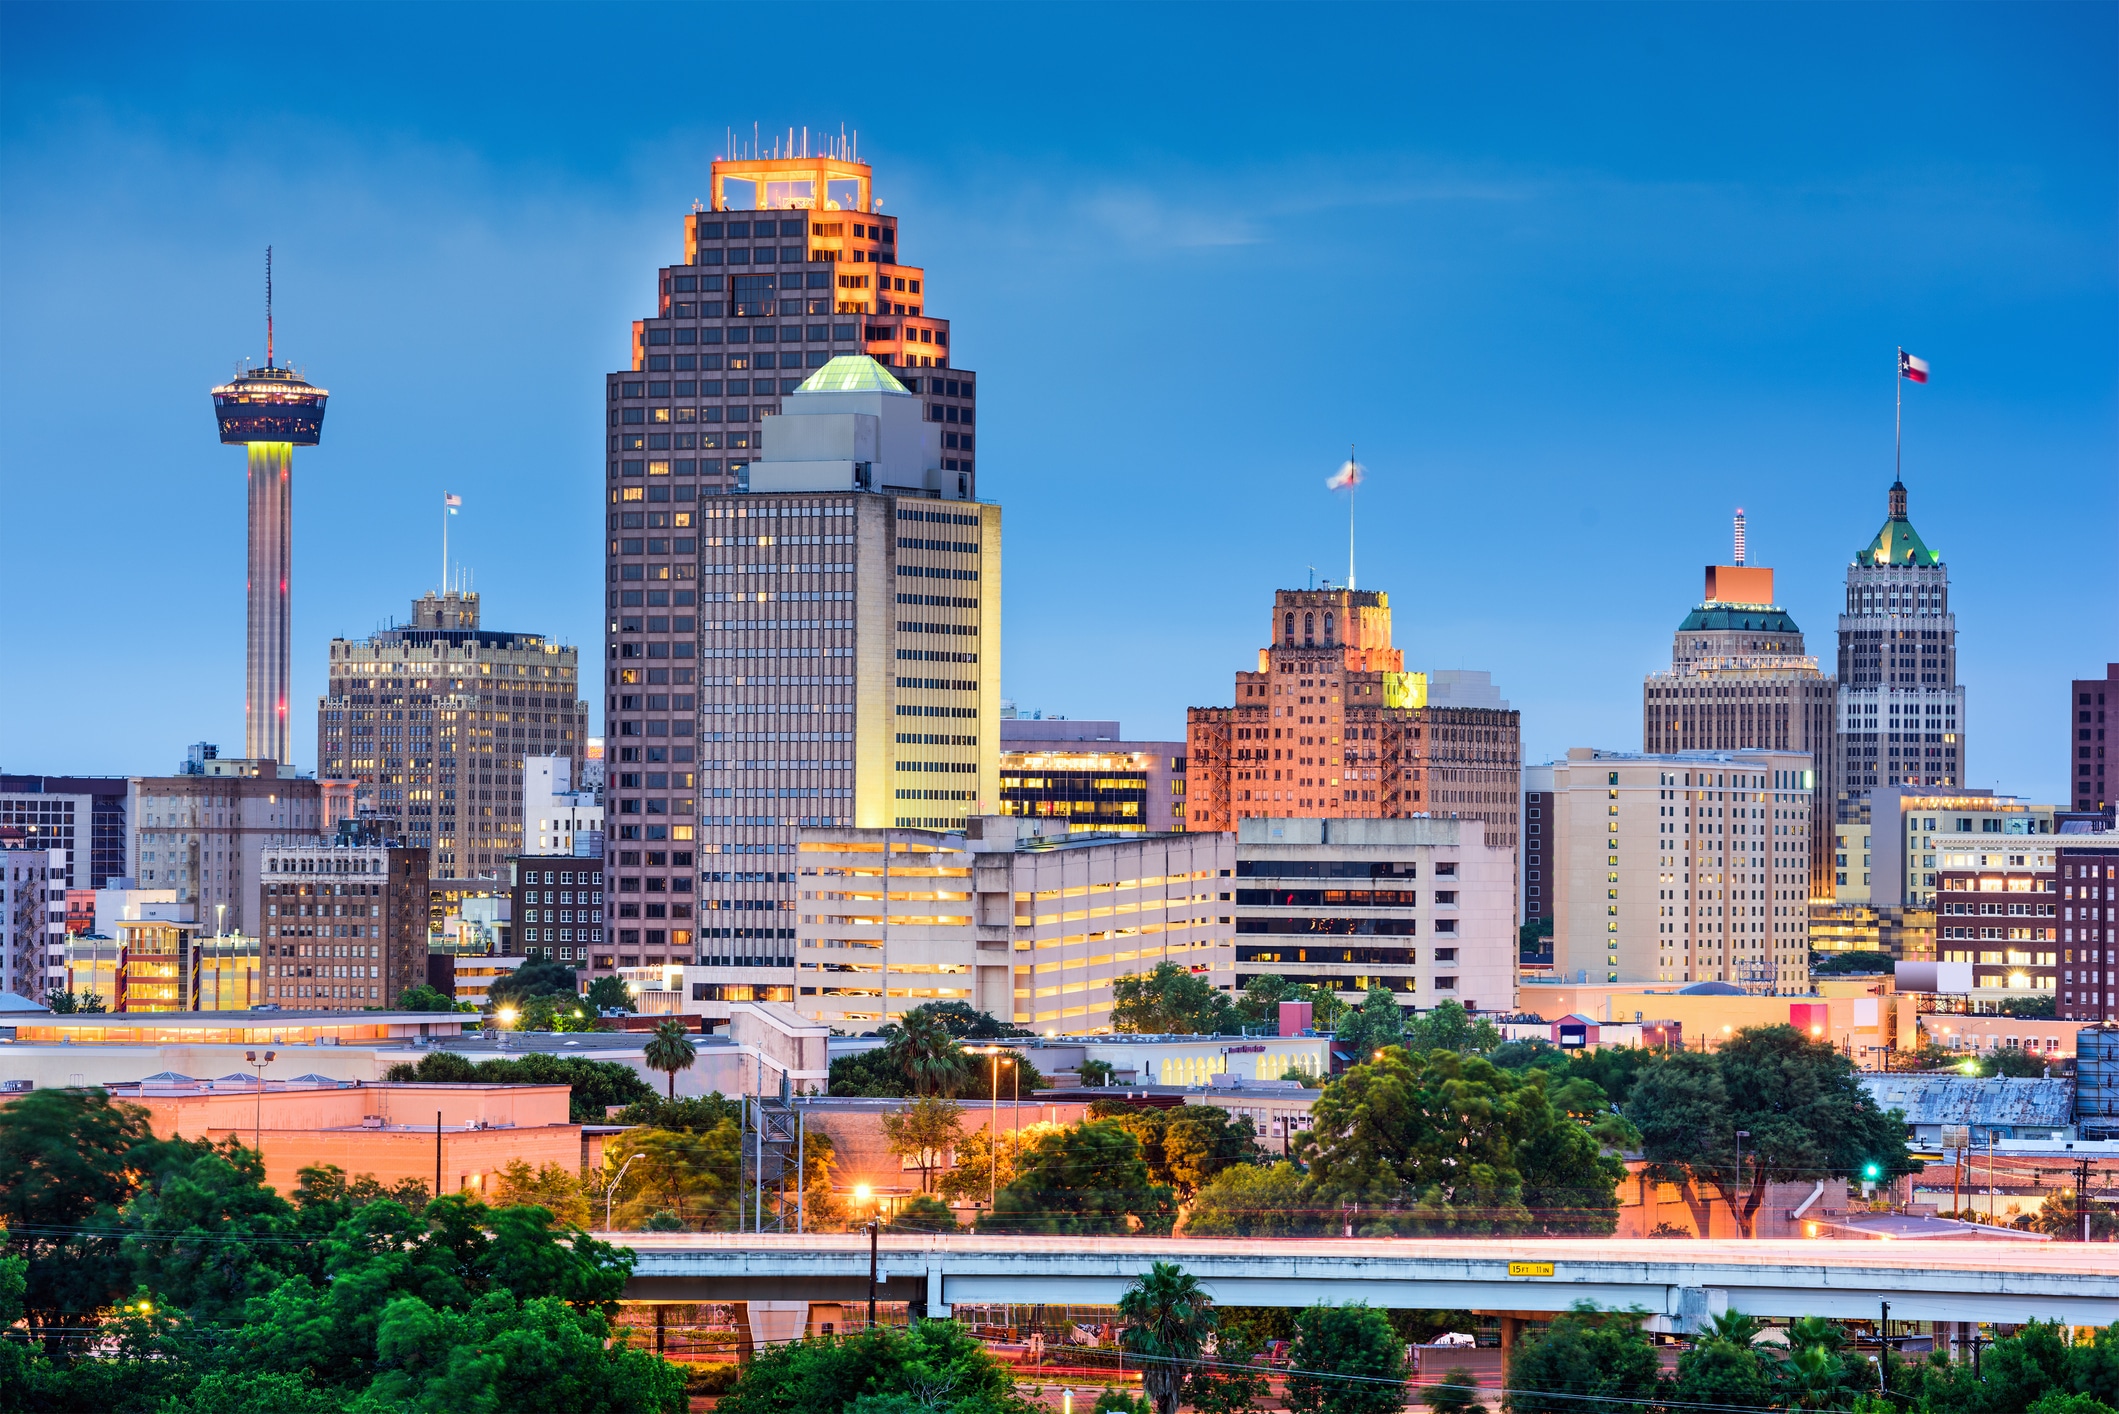 Image of the San Antonio, Texas skyline